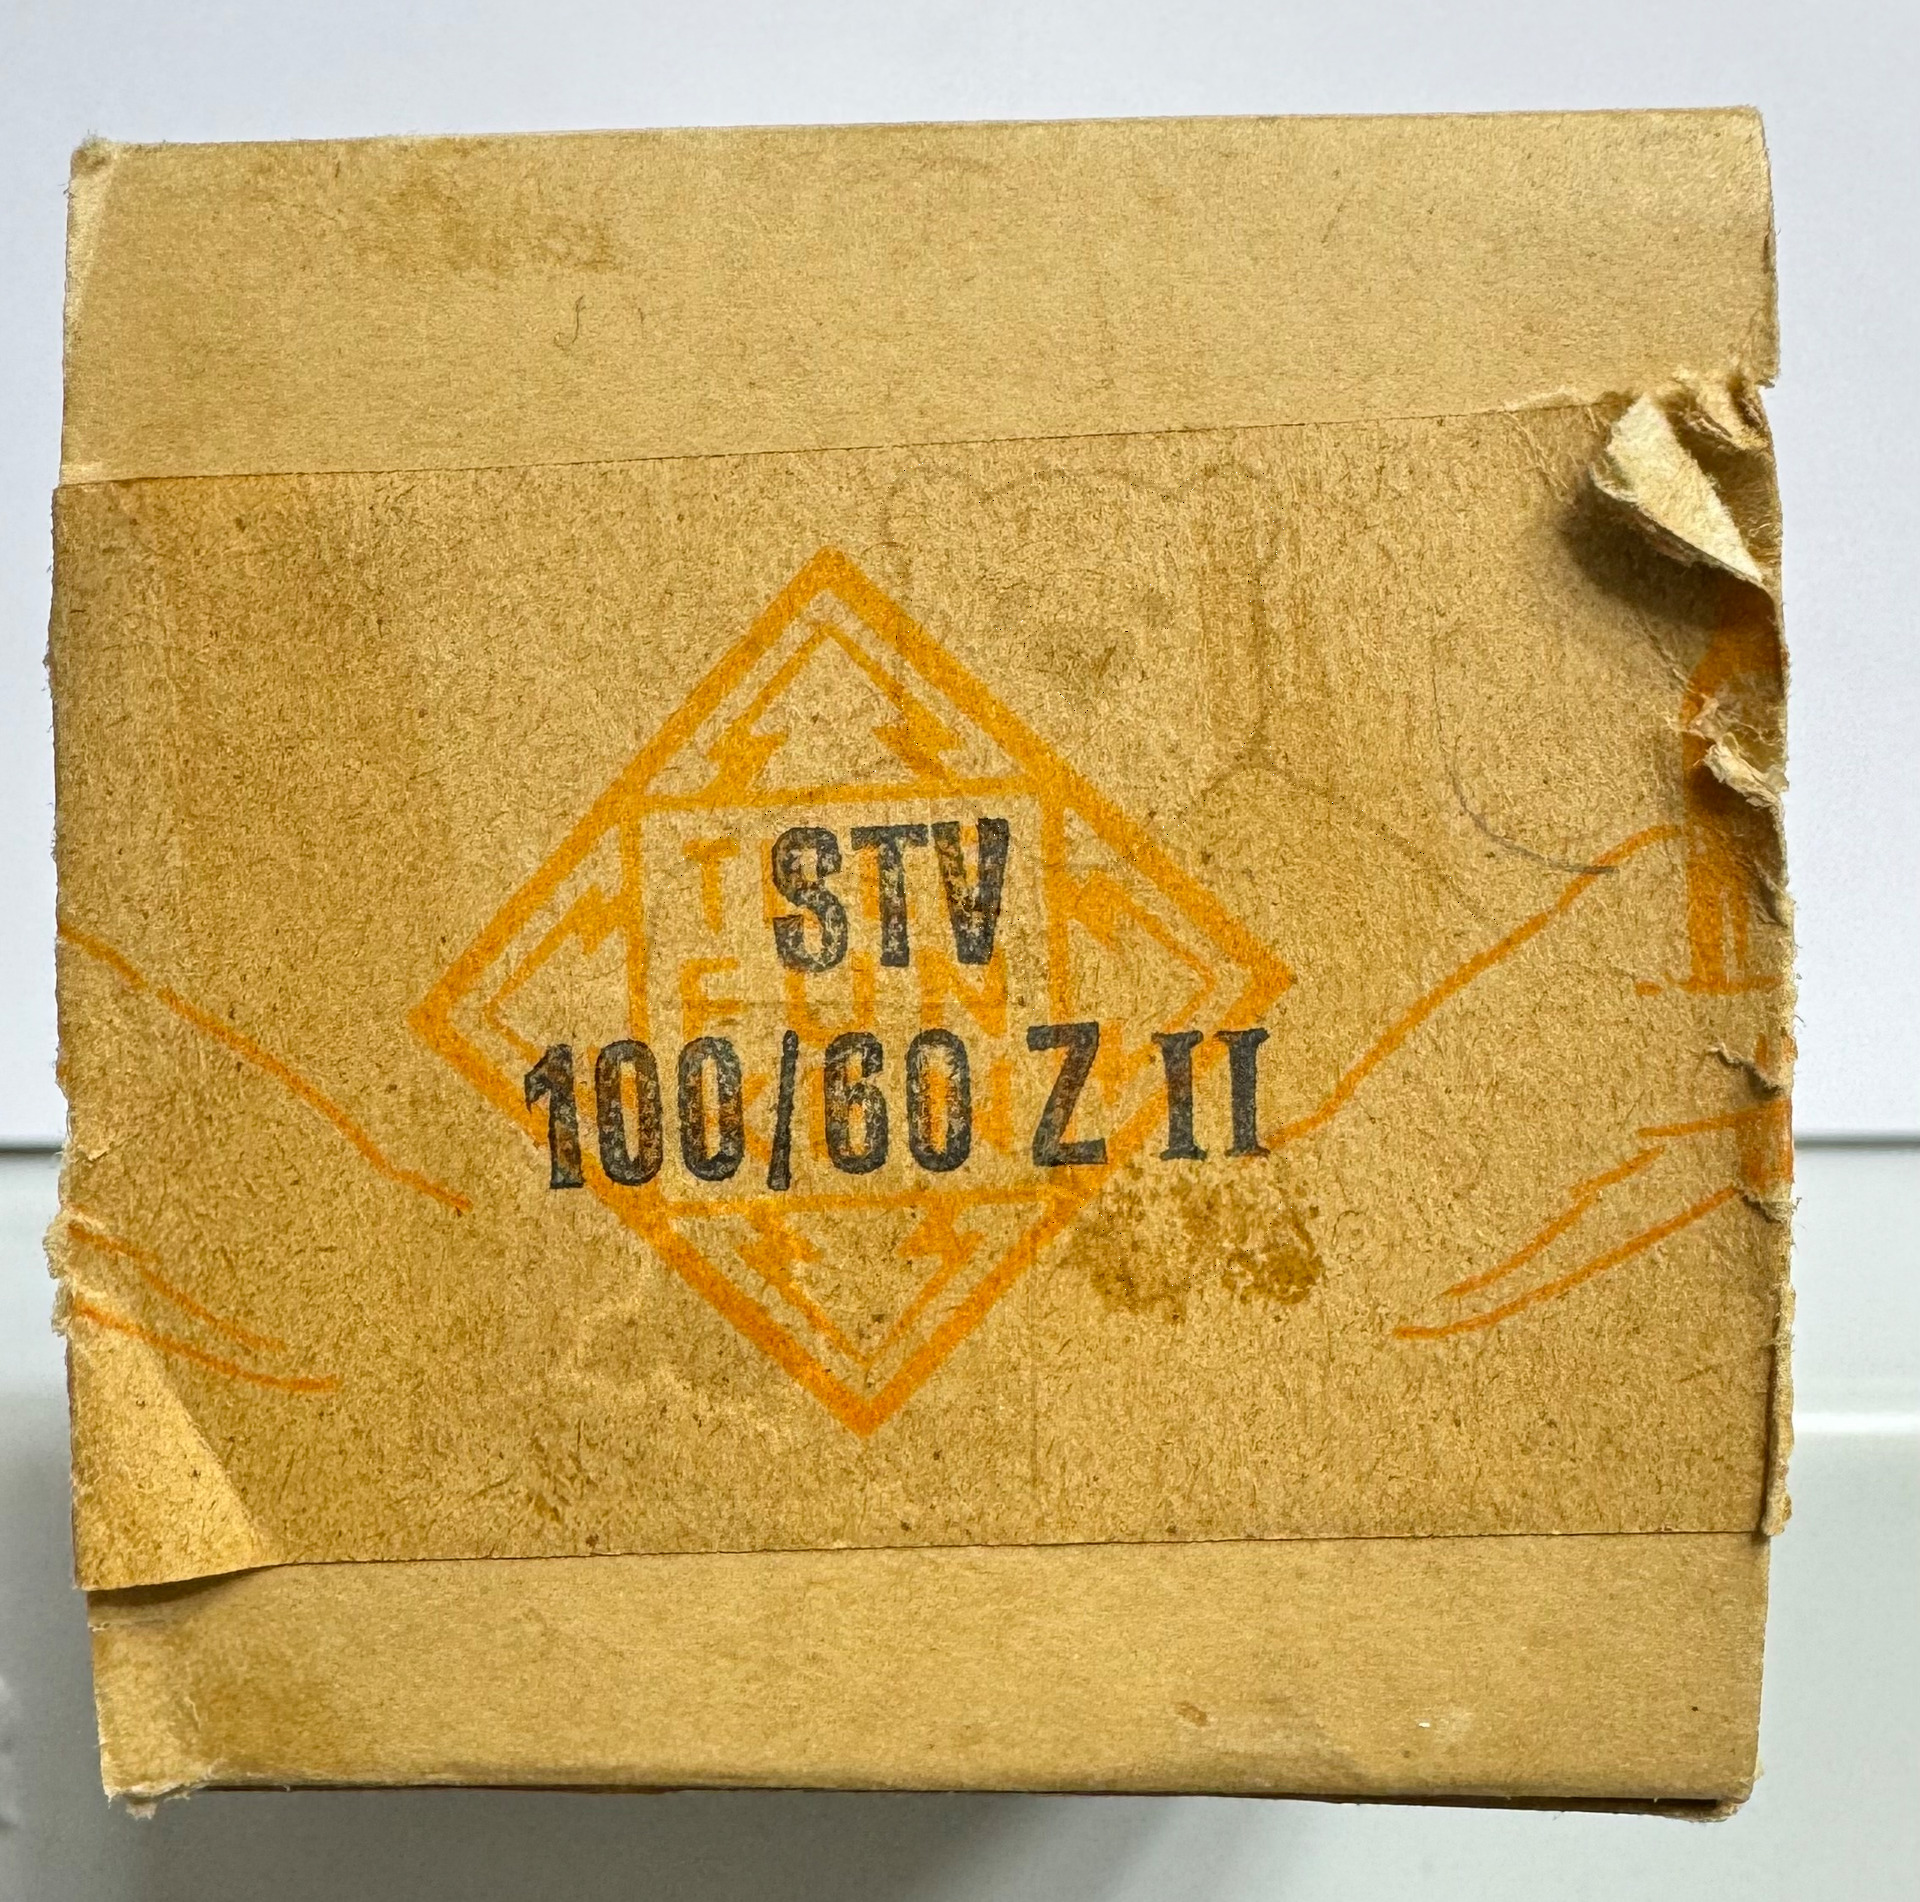 Röhre STV100-60 Z II #4400 Verpackung Bild 4